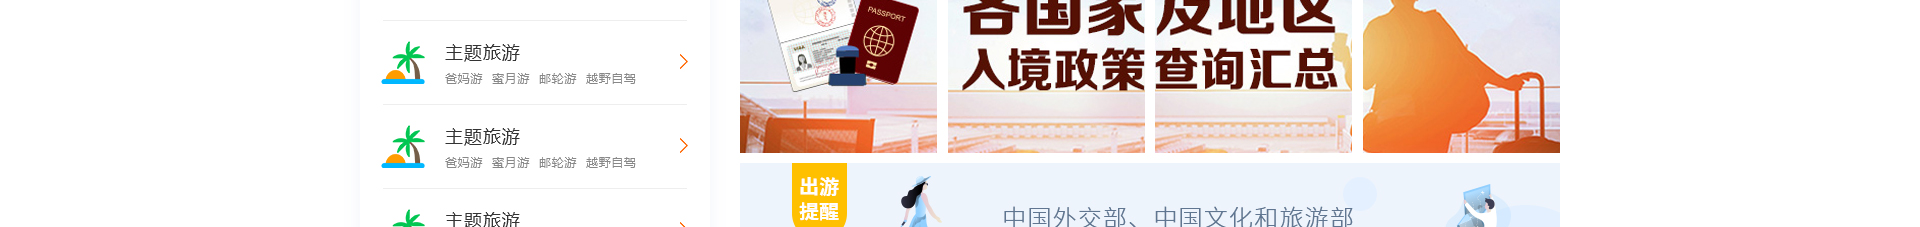 旅游服务平台_洛壹网络平台开发